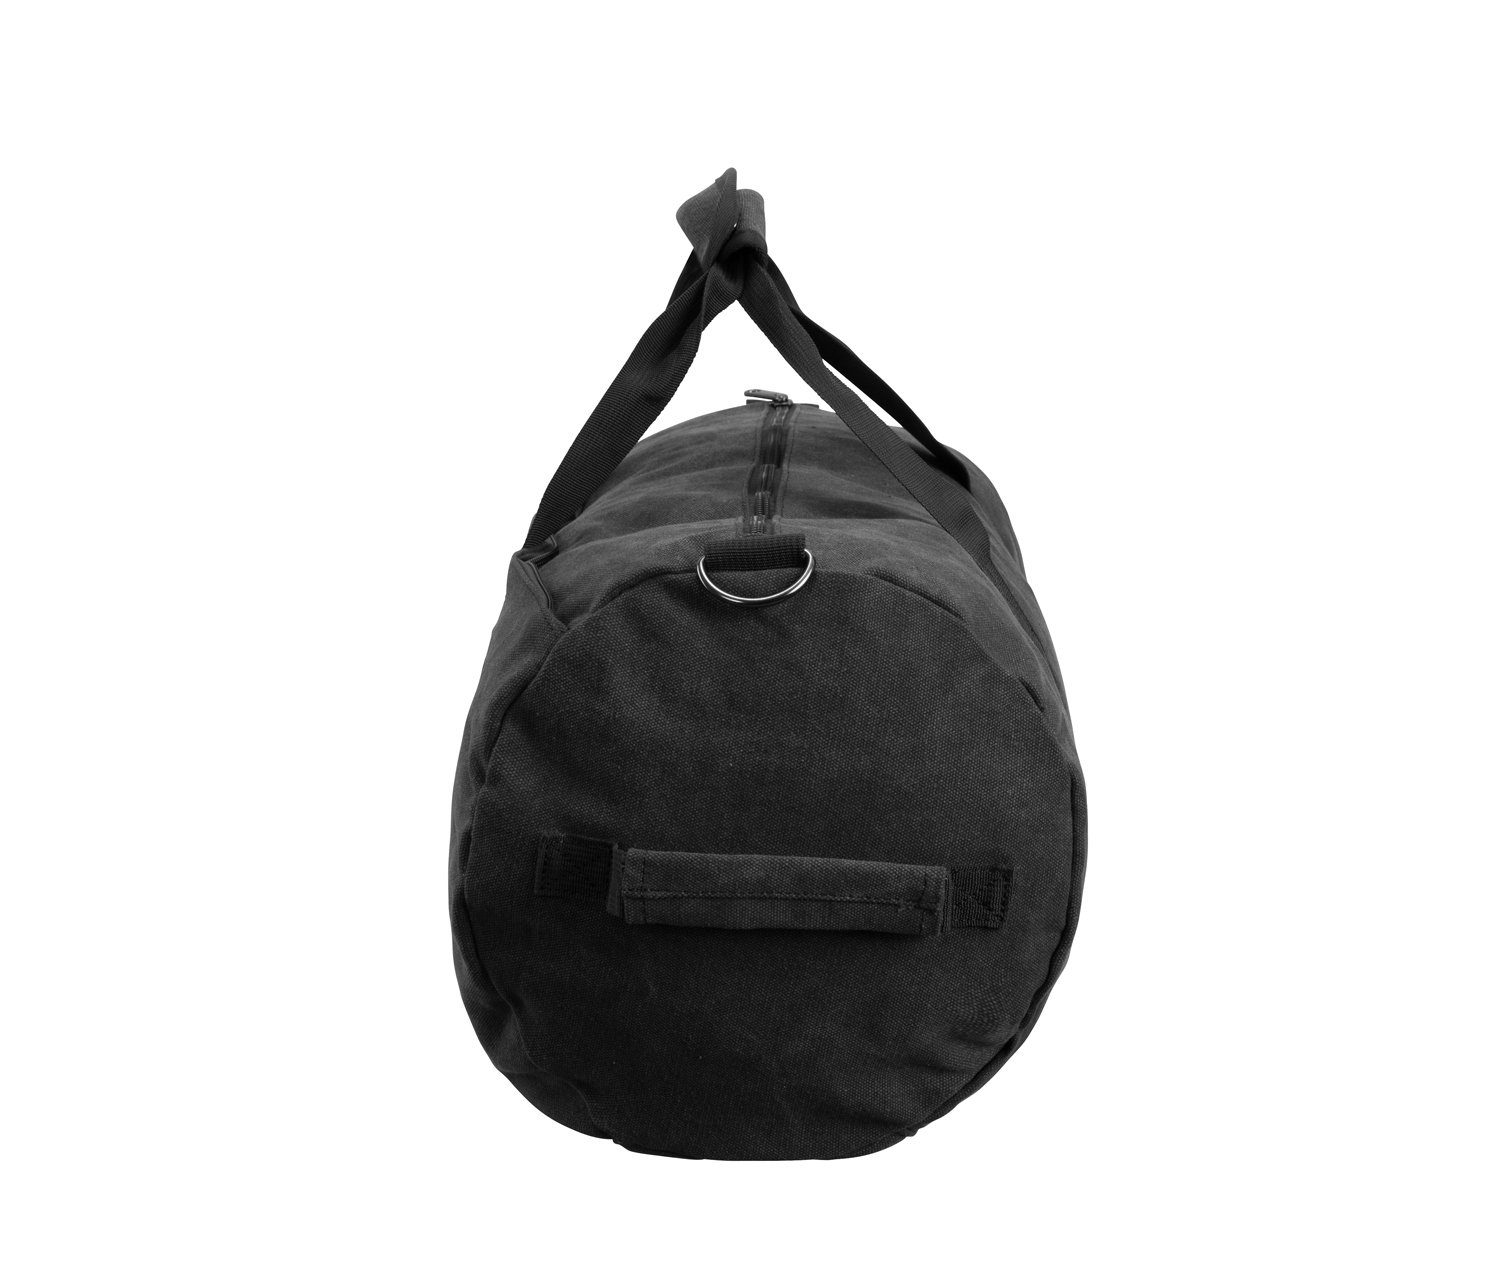 Manufaktur13 Sporttasche Canvas Barrel Bag Dark 24L Fassungsvermögen - Bag, Sporttasche, Grey Duffel